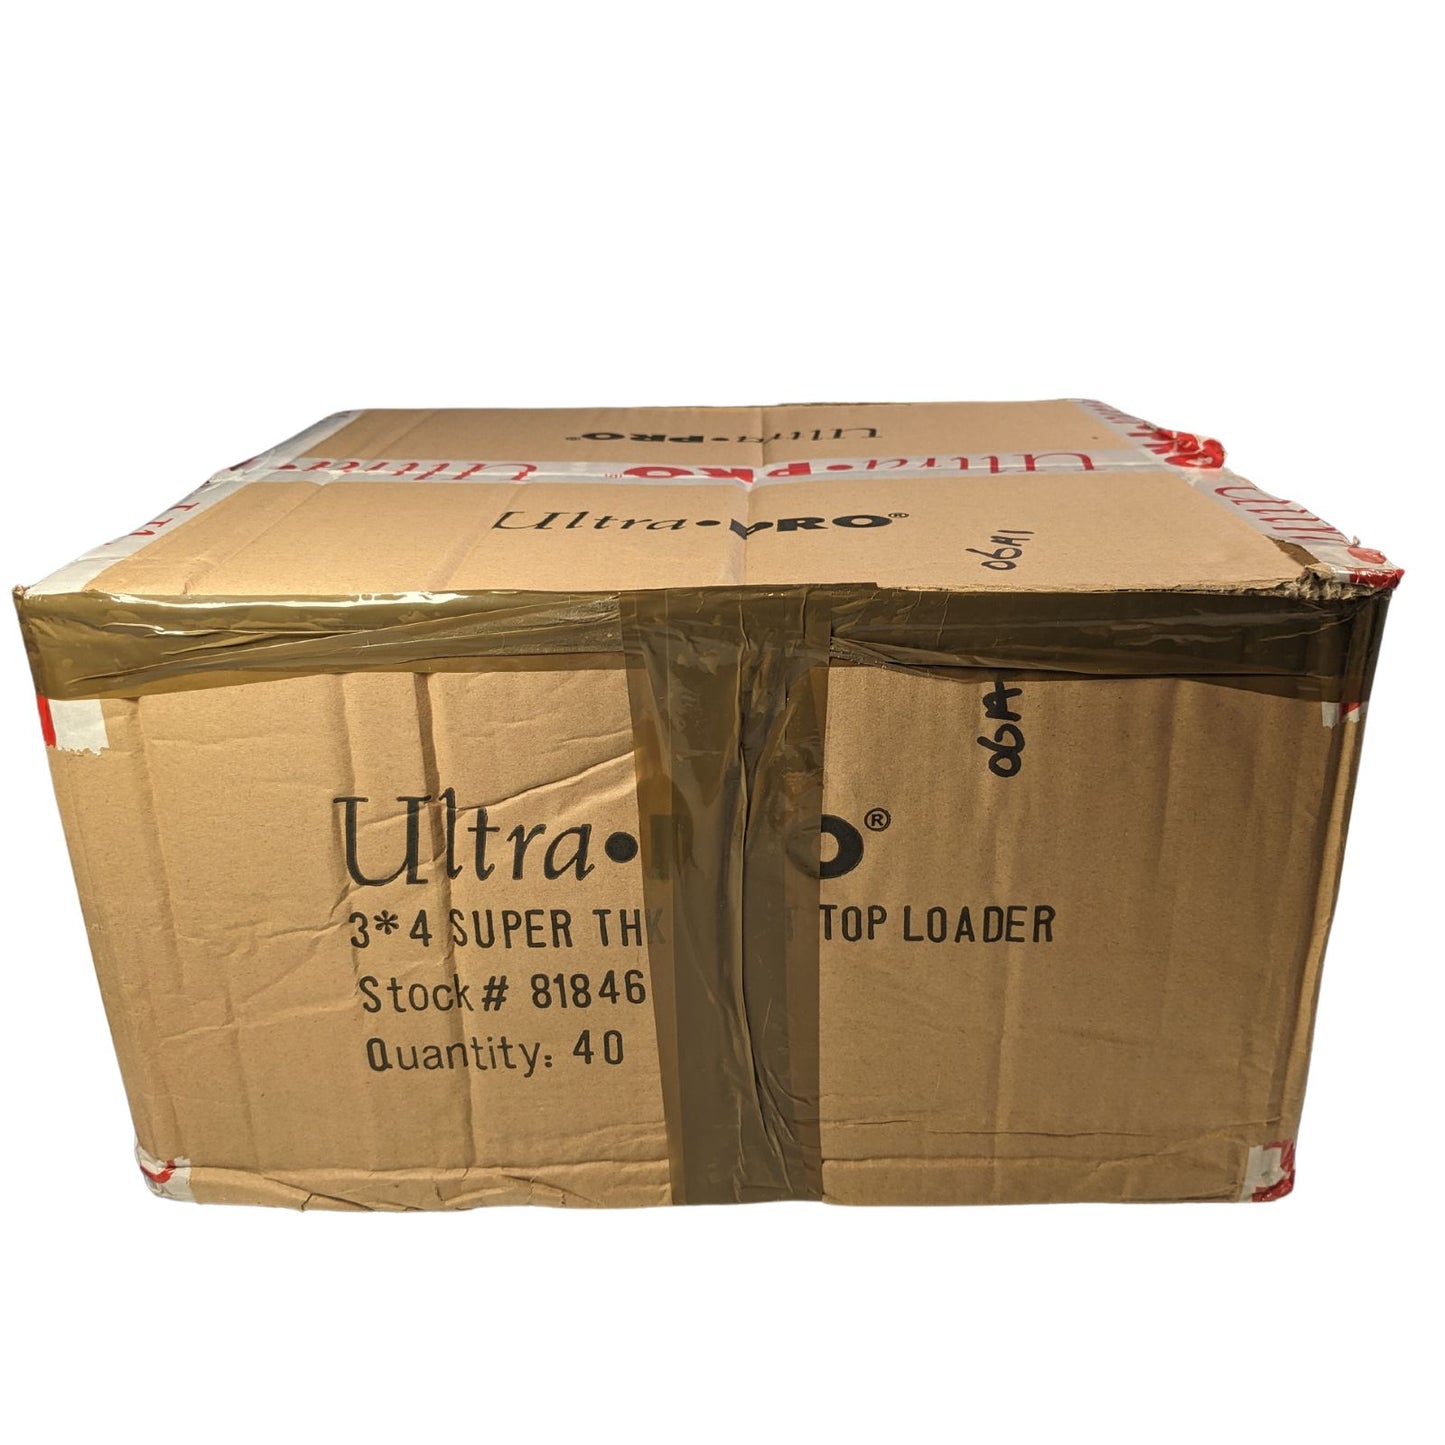 100pt Ultra Pro Toploader, versiegelter Karton mit 40 Packungen (1000 Toploader)